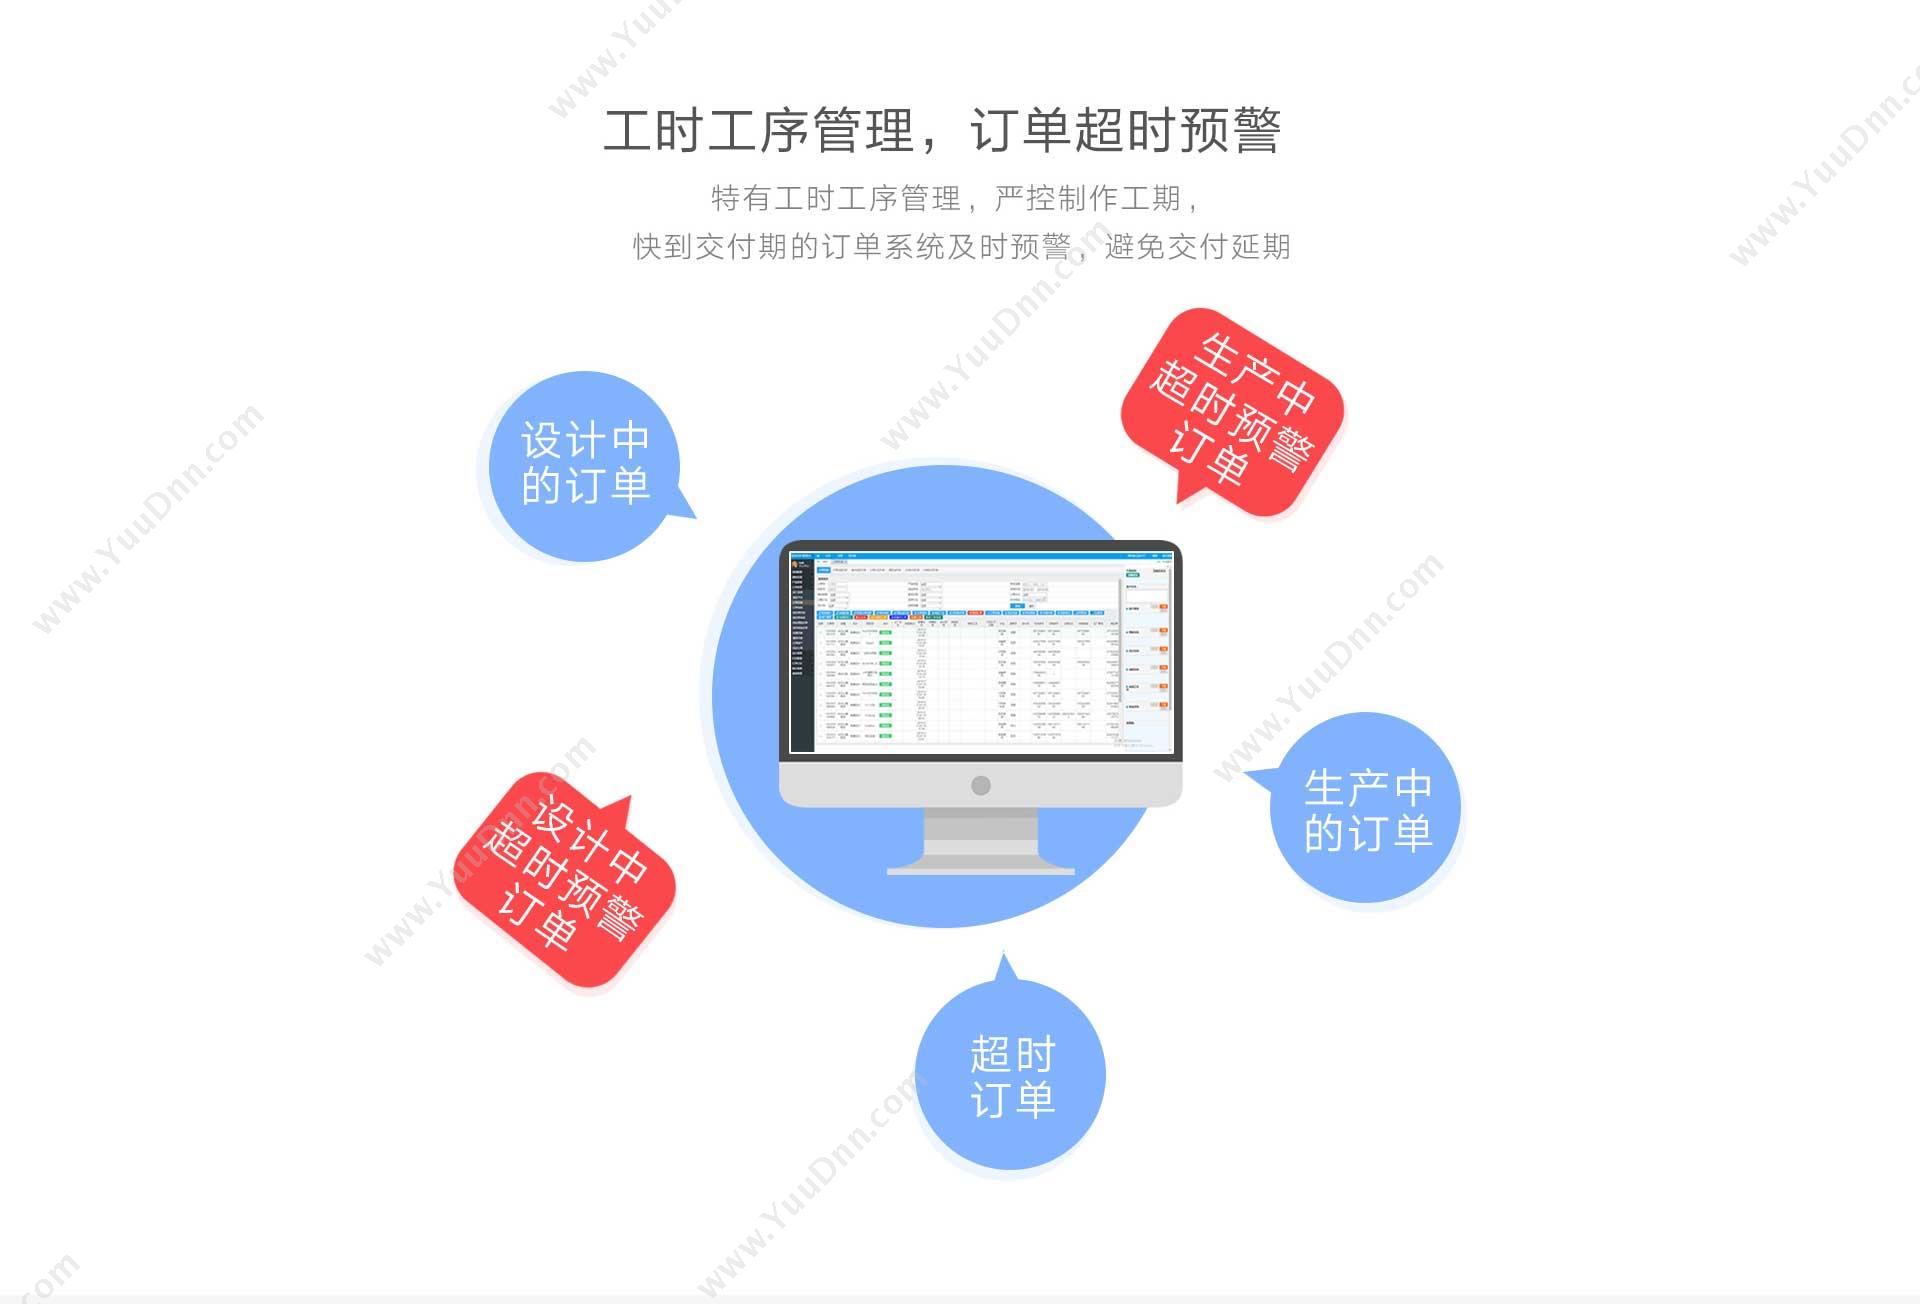 山东神华信息 神华科技开发税务办理软件实用具体功能 开发平台